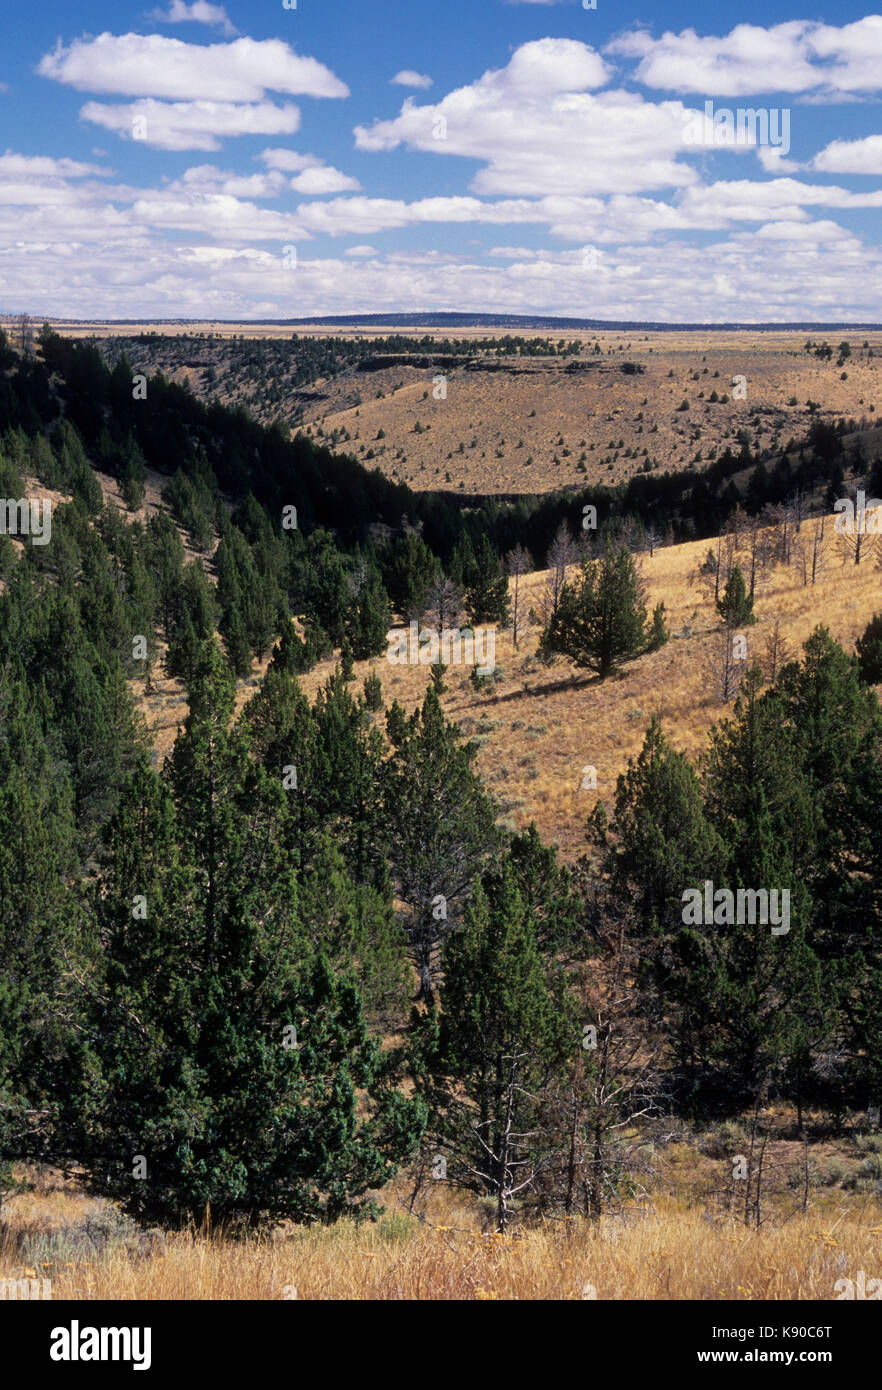 Western genévrier (Juniperus occidentalis), Prairie South Fork désert Zone d'étude, Prineville District Bureau de la gestion des terres, de l'Oregon Banque D'Images